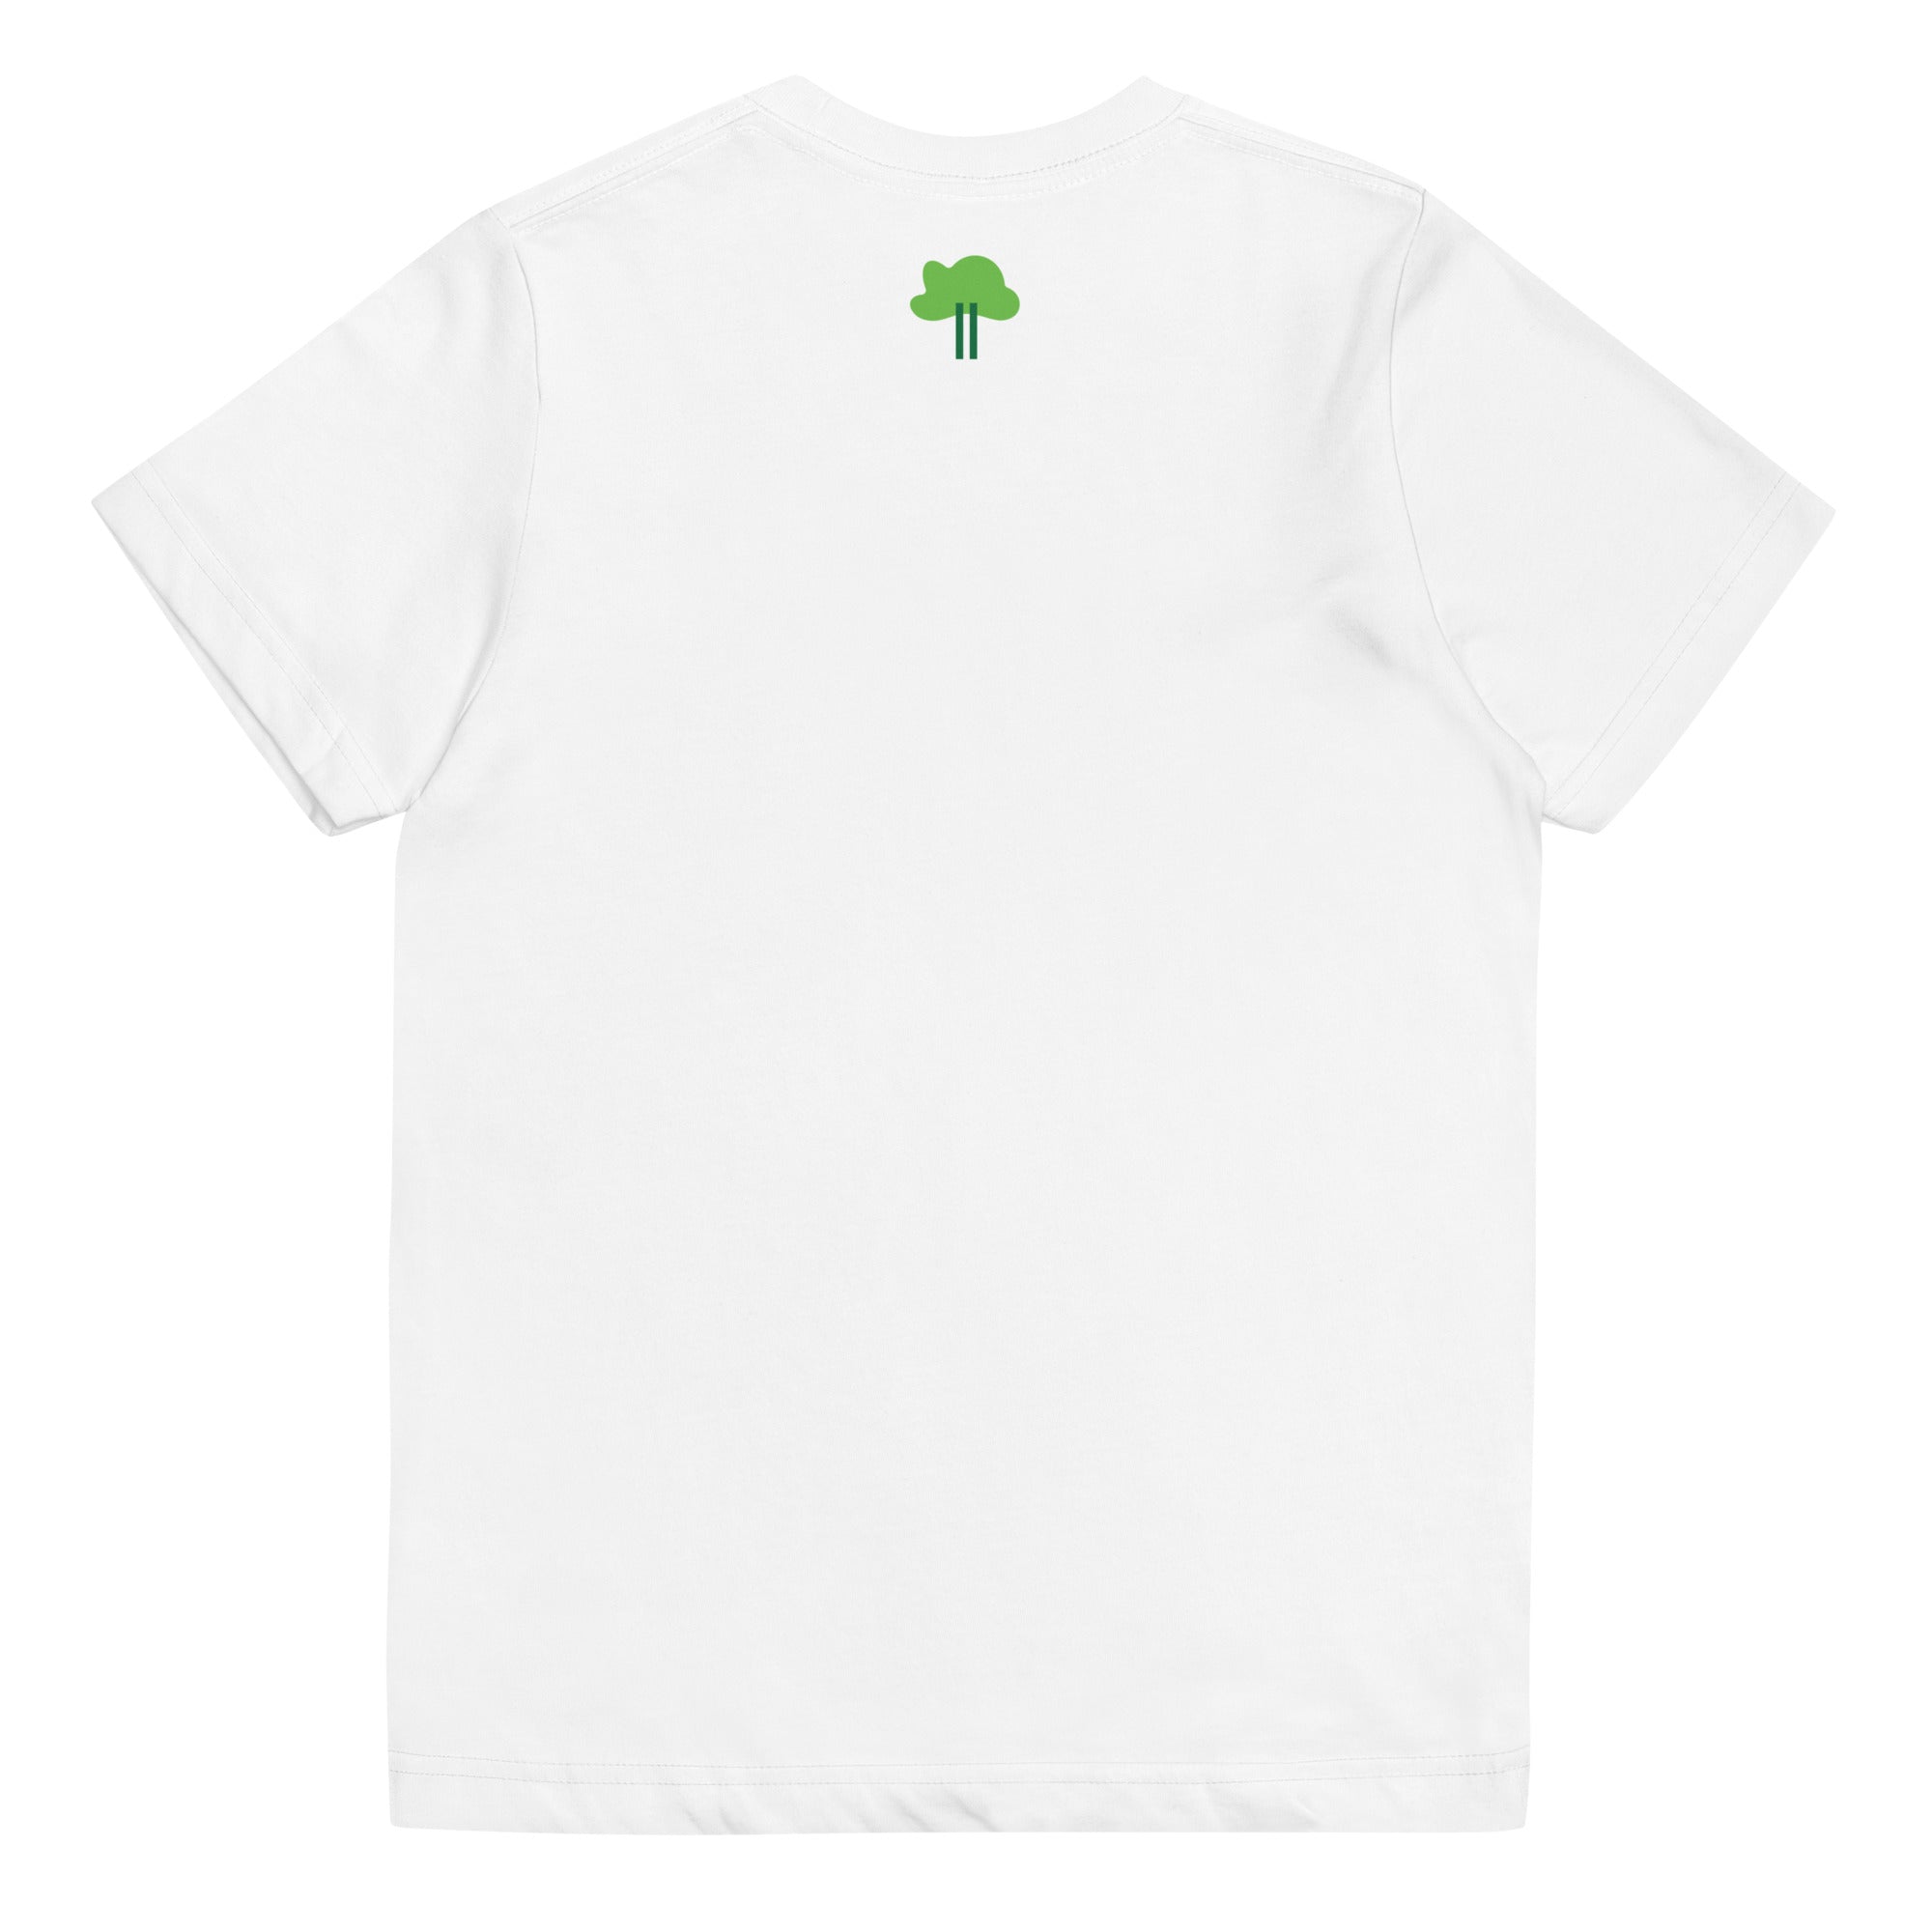 I Temp - Lago - K6 | Youth jersey t-shirt